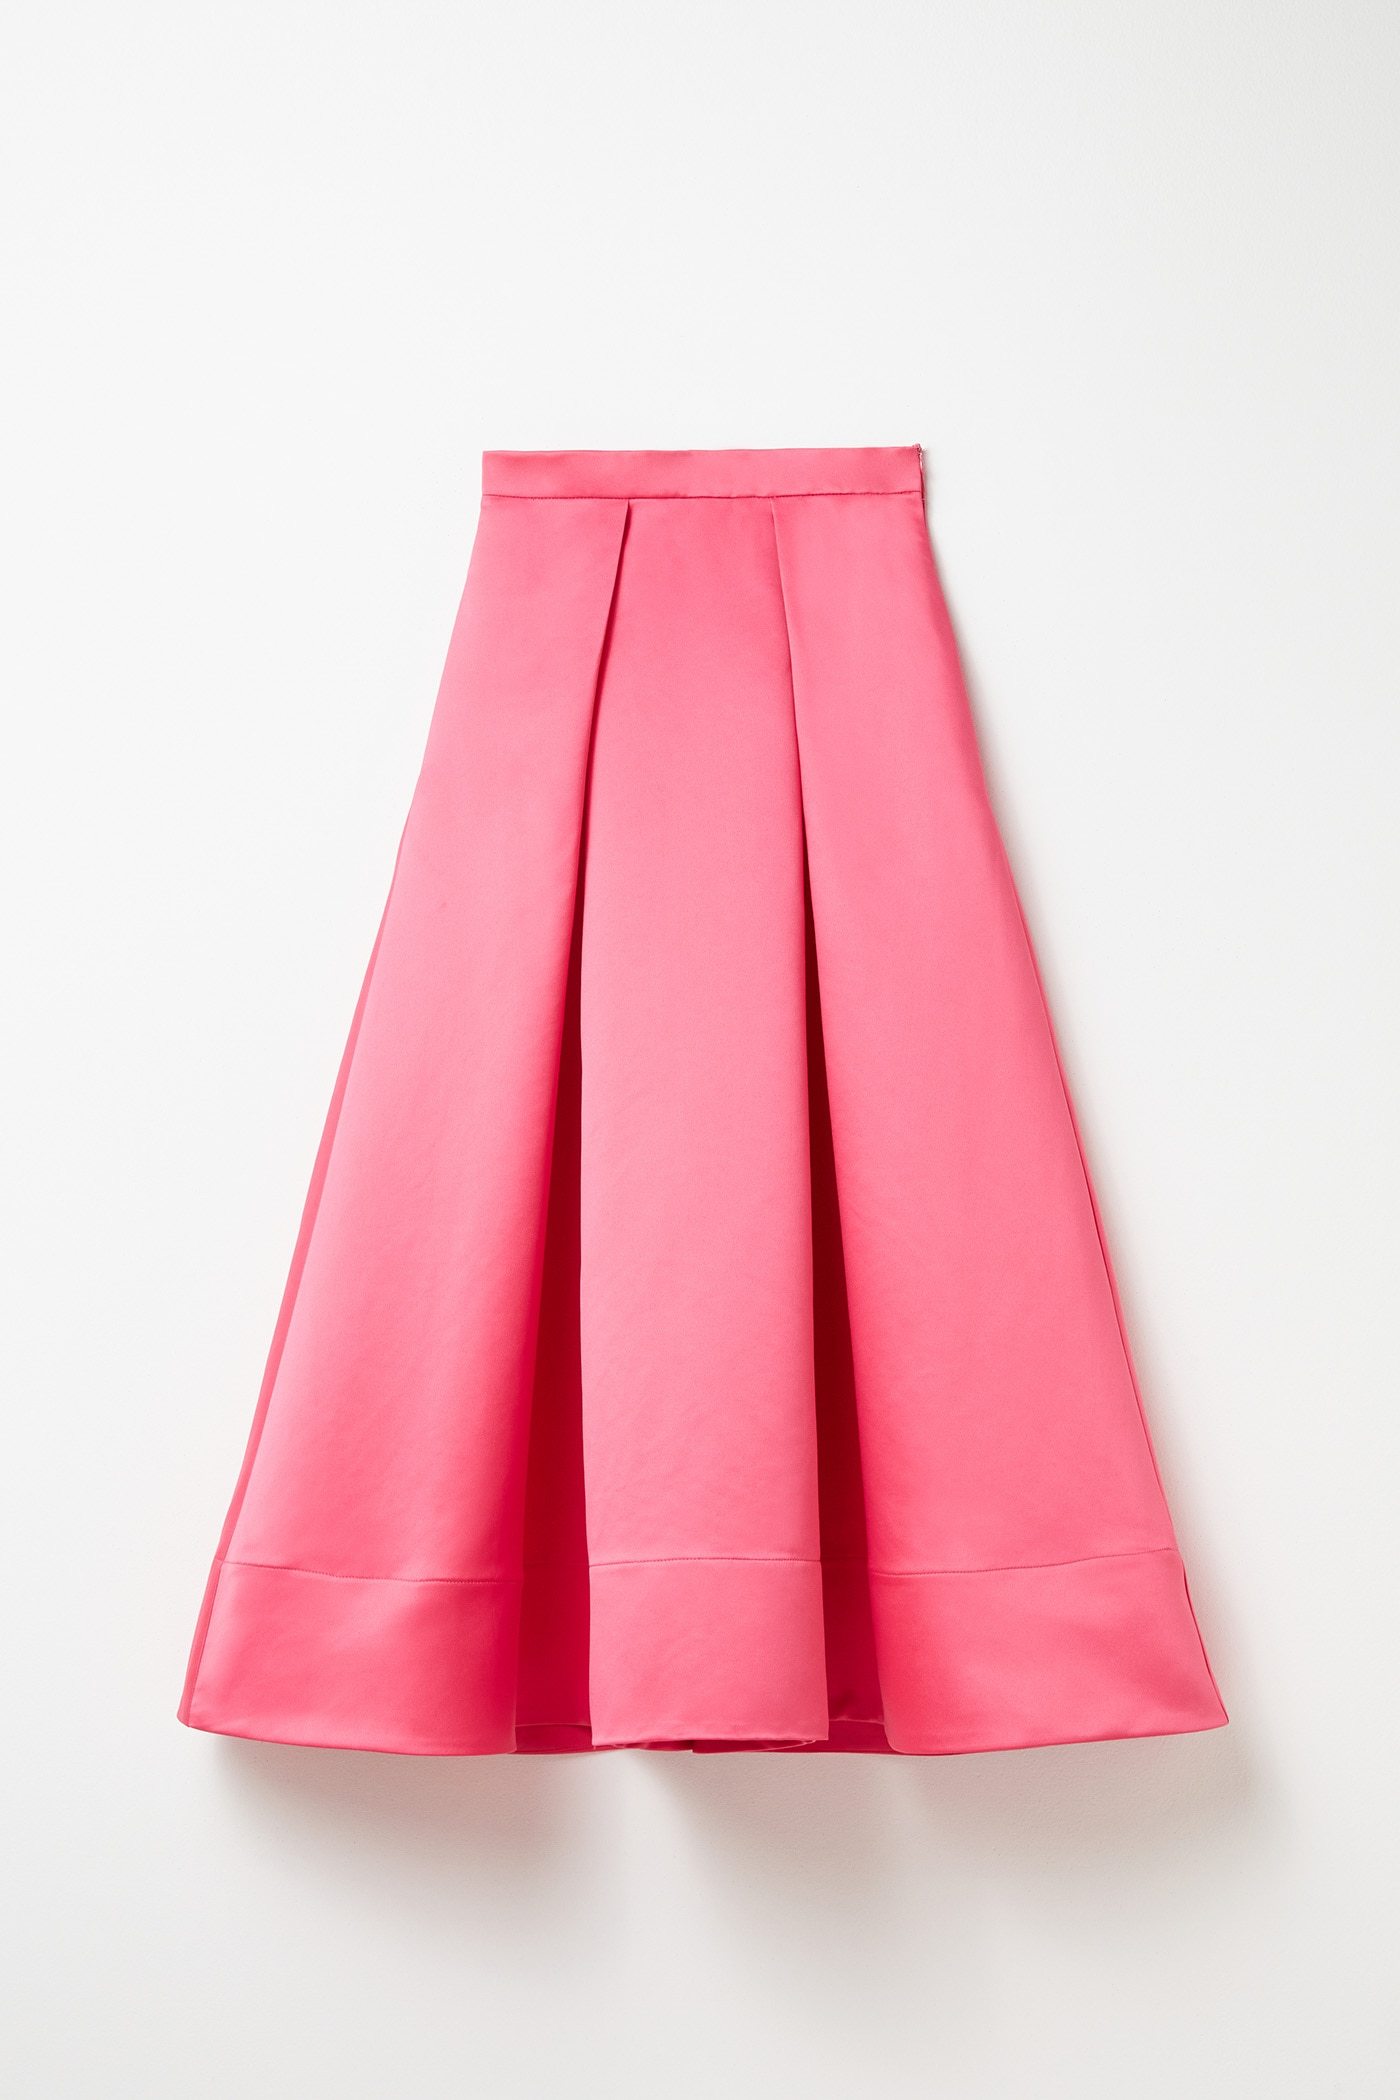 Falda de Sfera (59,95 euros).